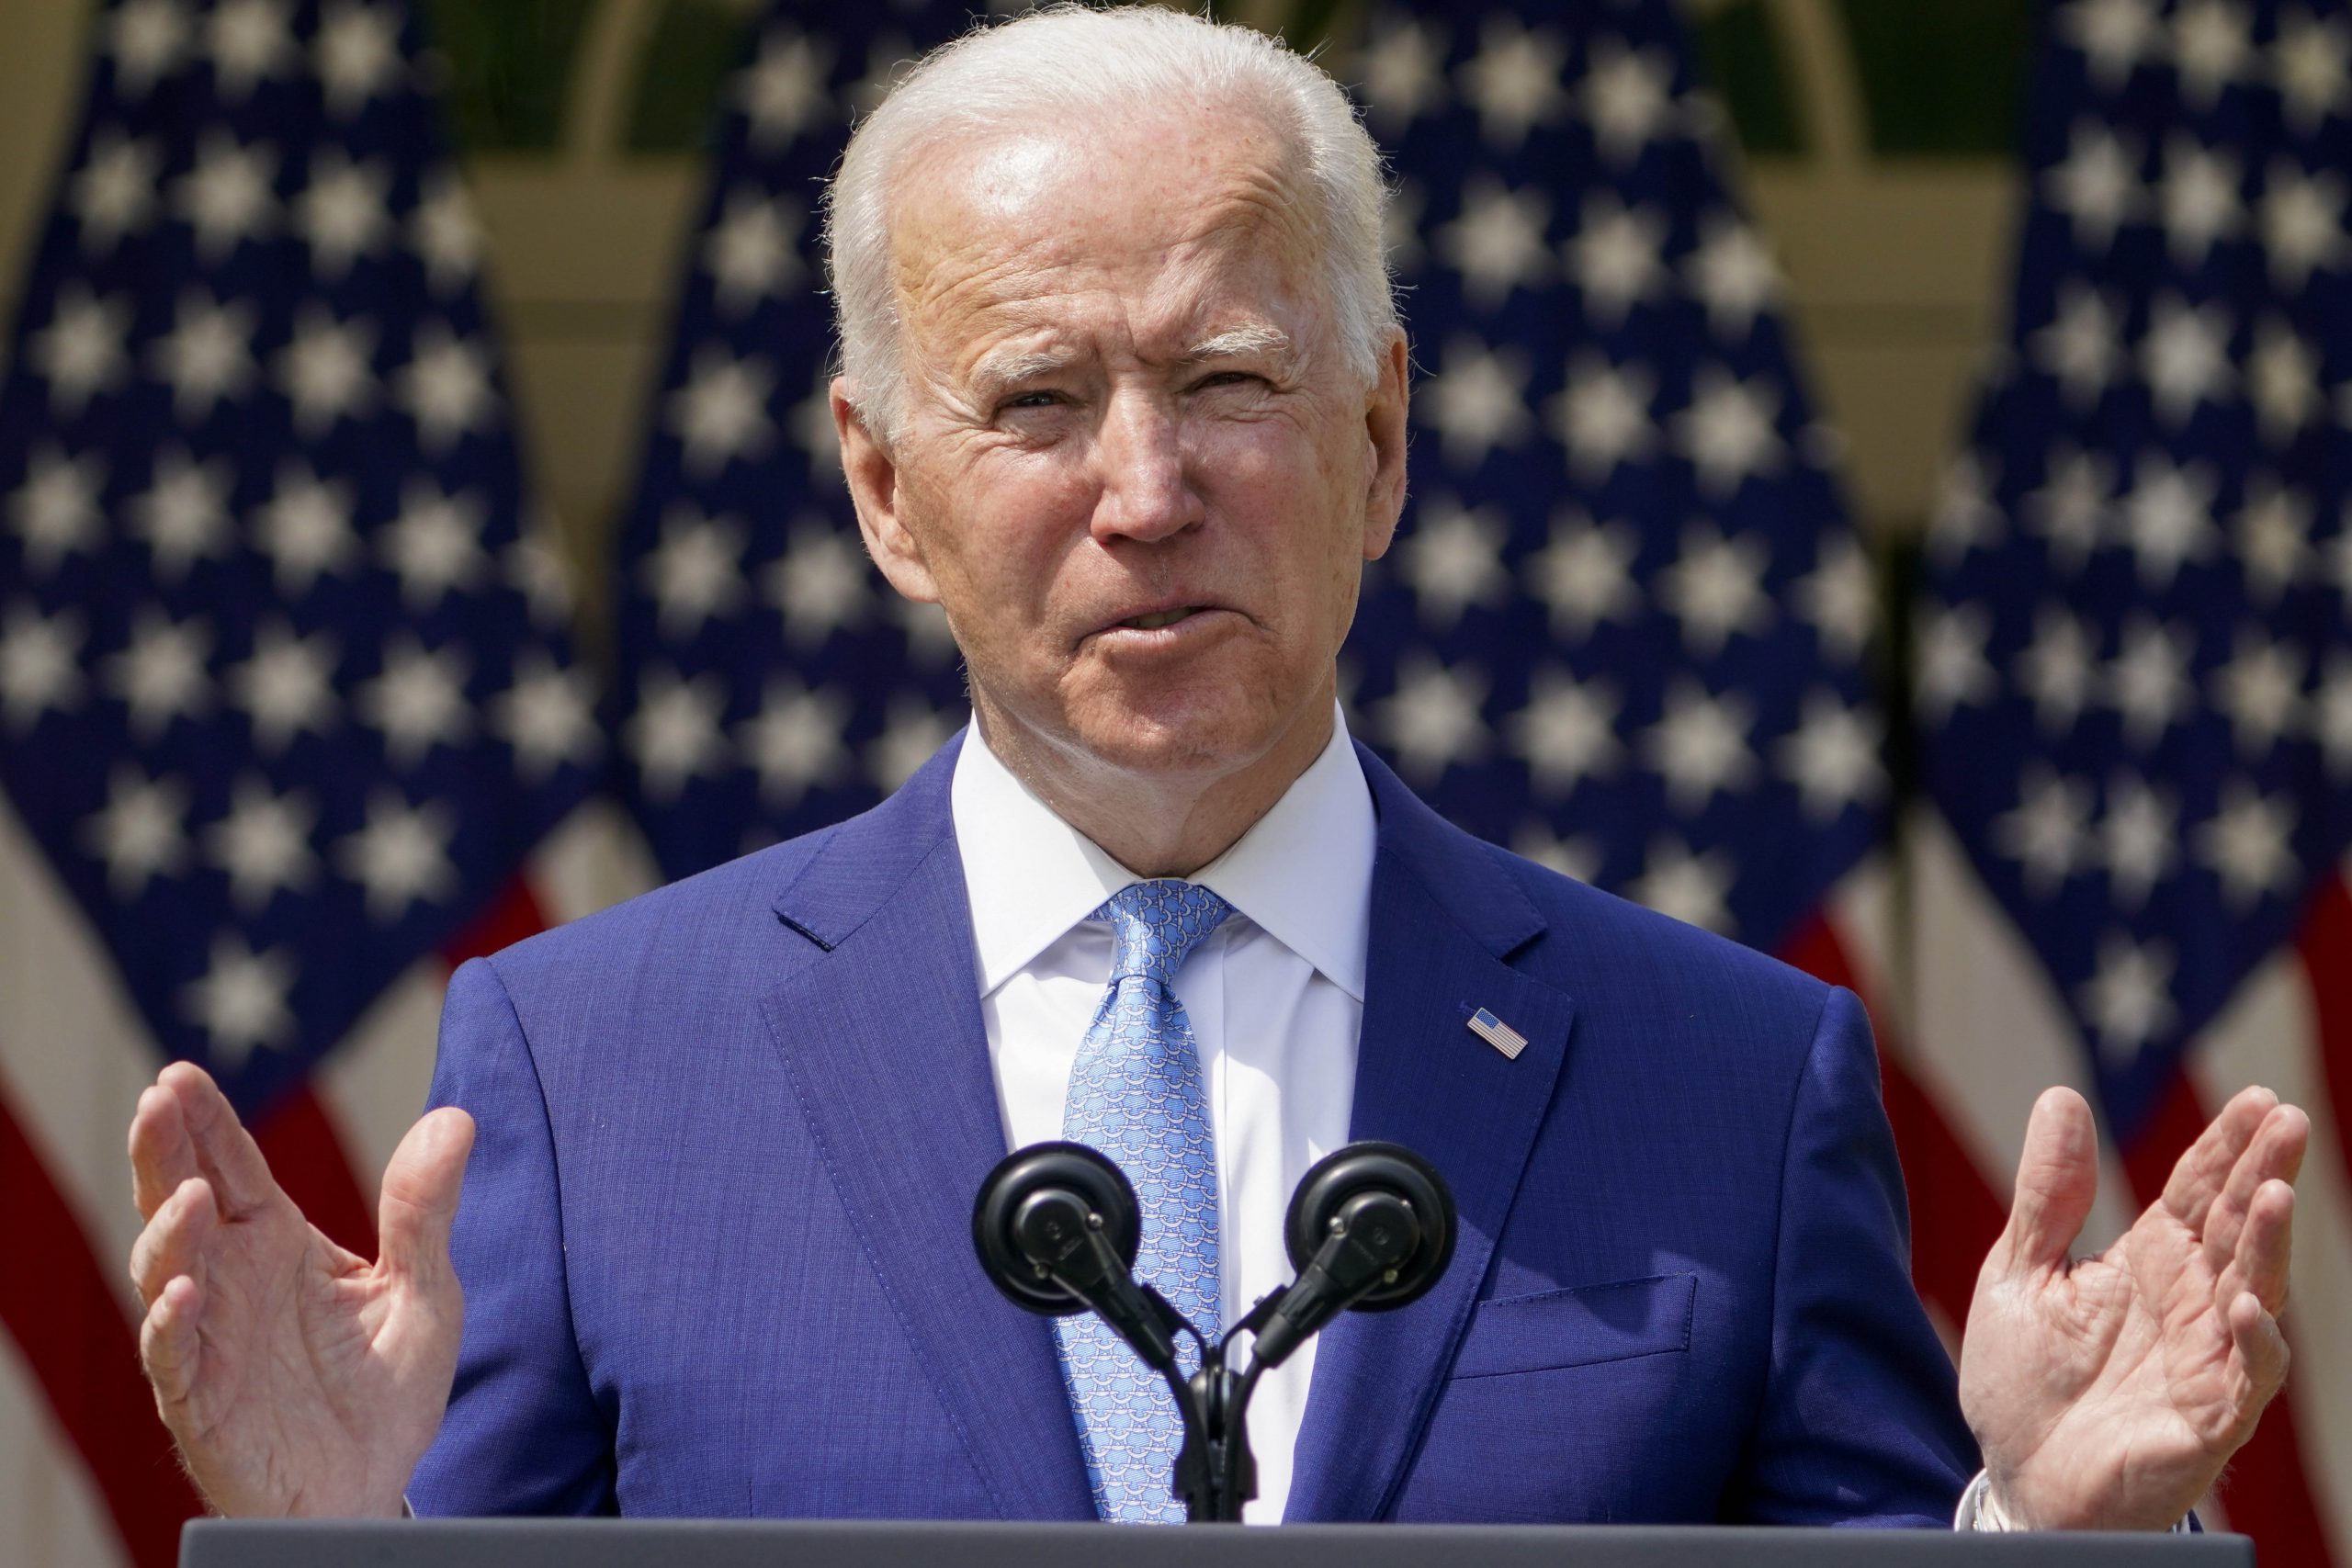 Joe Biden walks tightrope with bipartisan talks on $2 trillion infrastructure bill